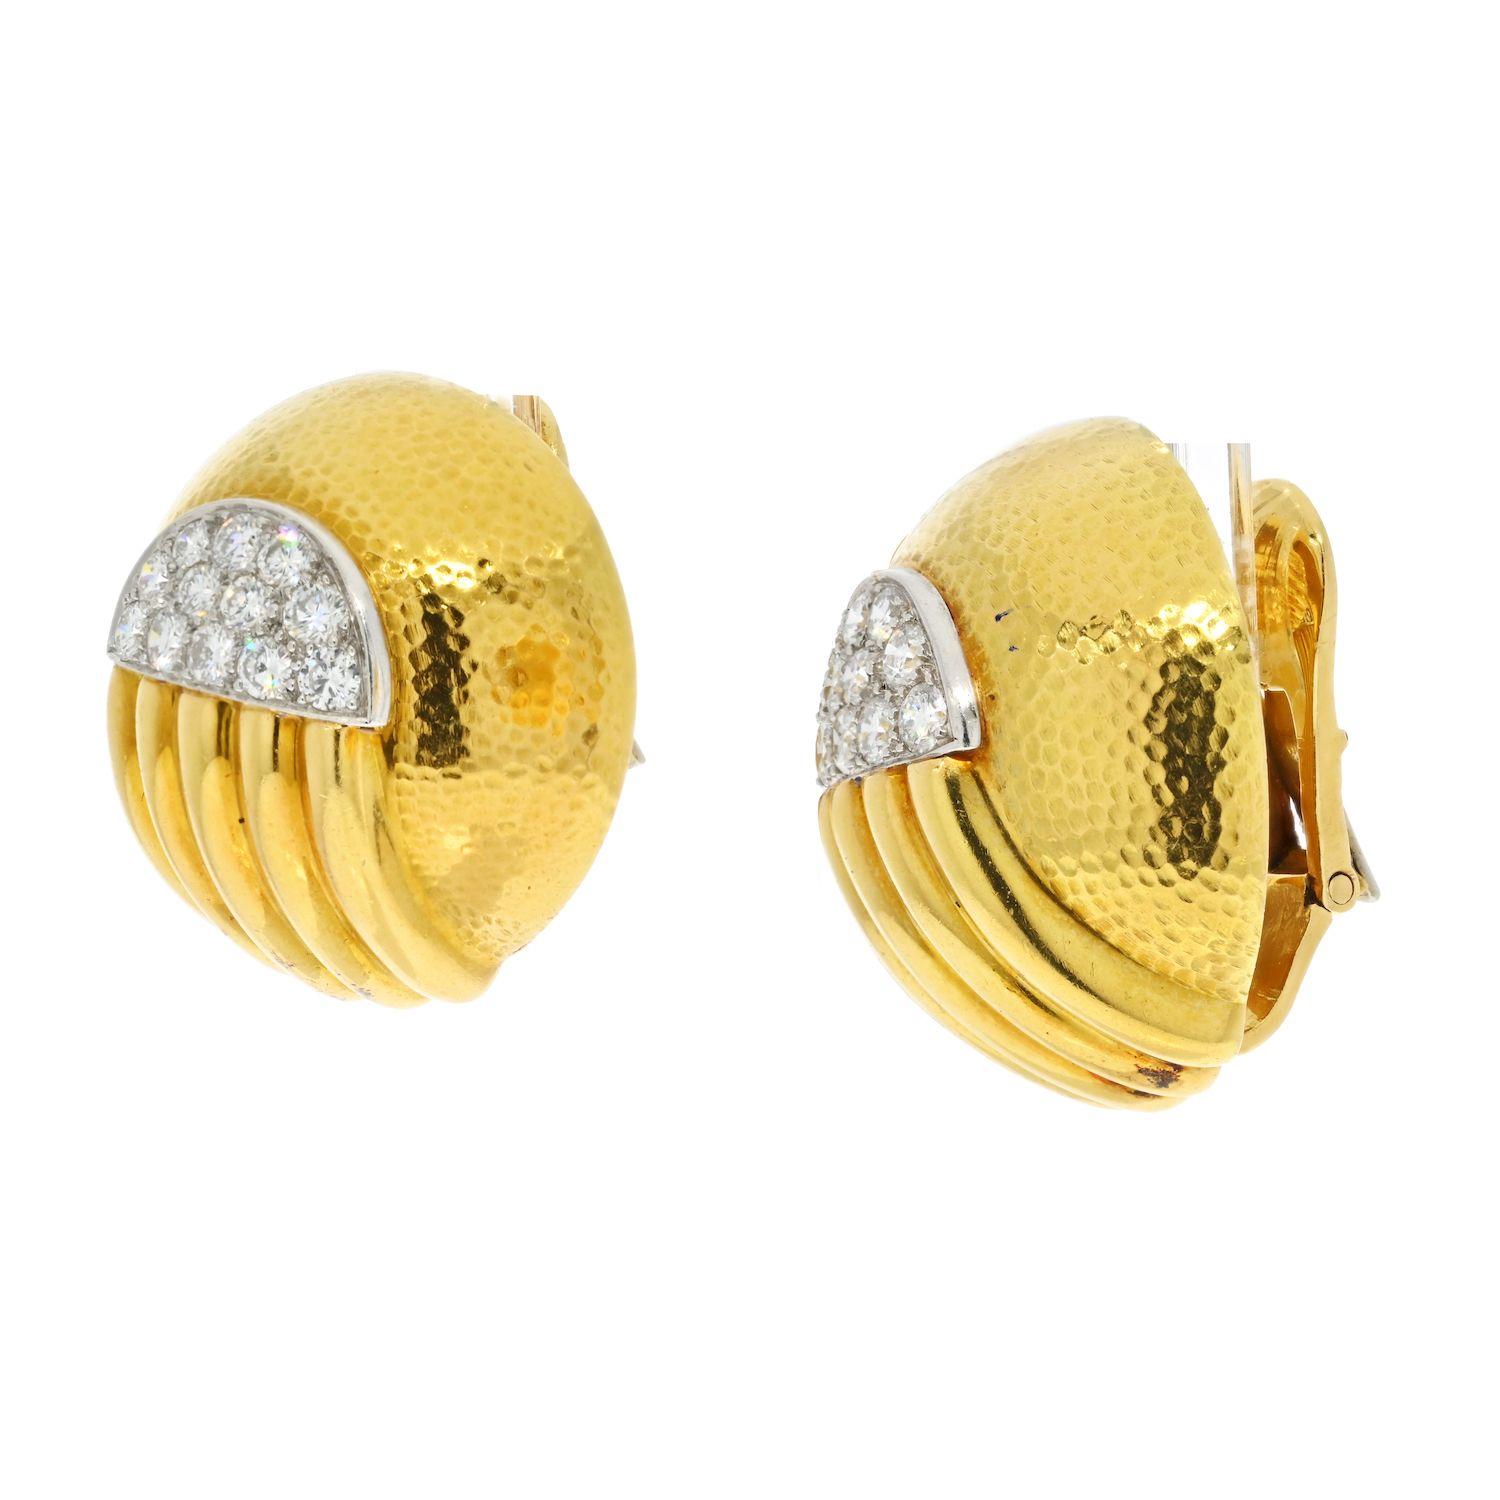 Ces étonnantes et audacieuses boucles d'oreilles à clip David Webb Diamond Dome Round sont réalisées en or jaune 18 carats et en platine. Accentué avec un diamant de taille ronde comme accentué. Fini avec la finition martelée signature de David